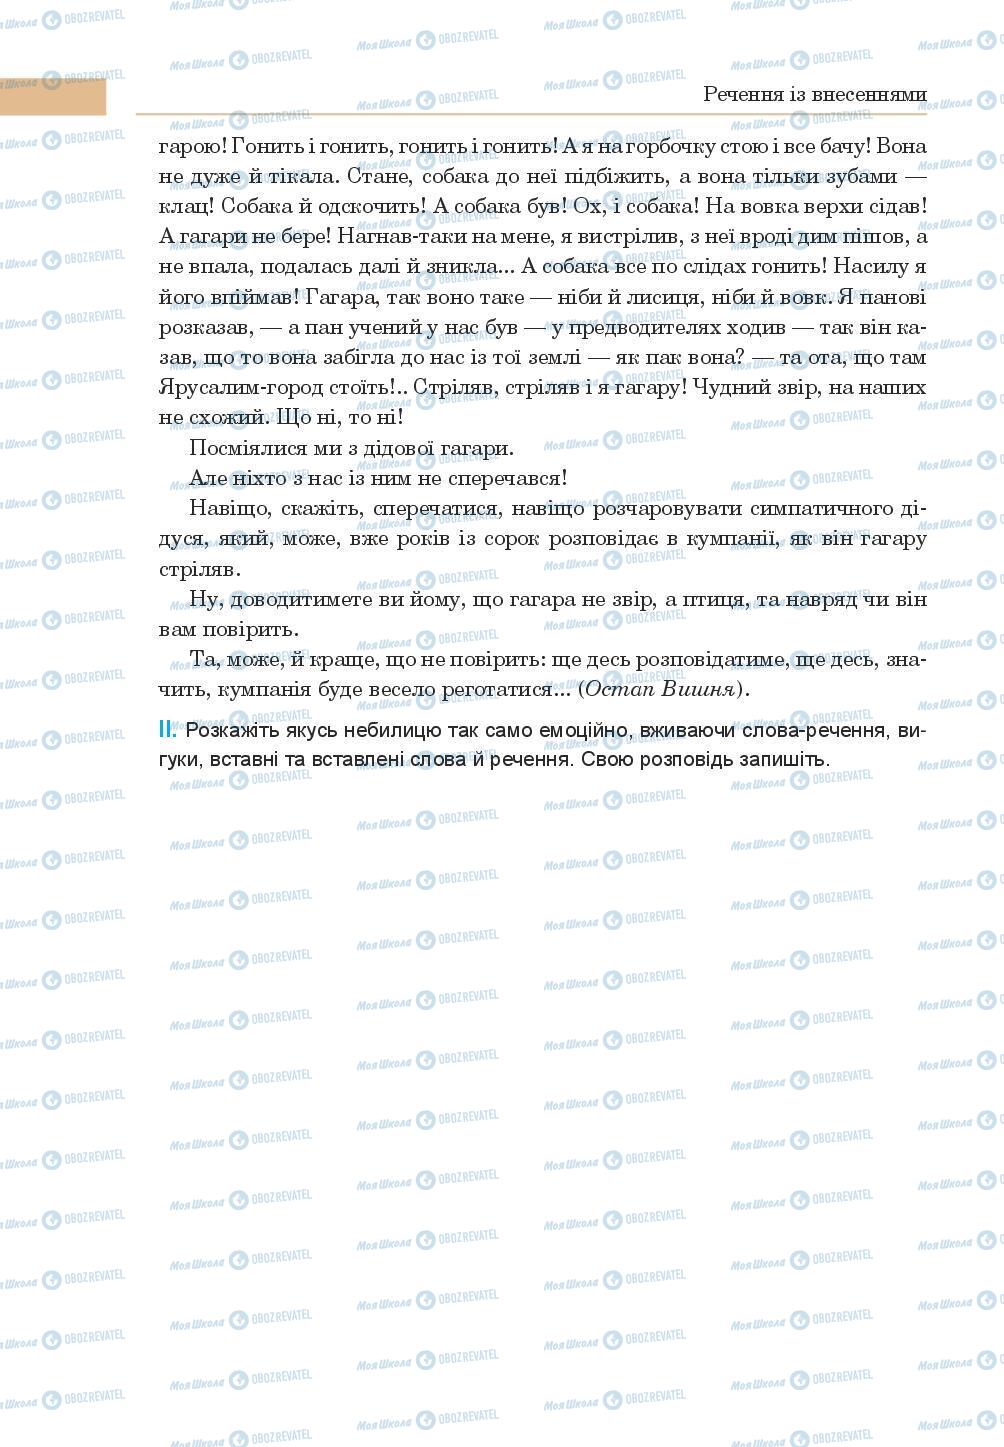 Підручники Українська мова 8 клас сторінка 210